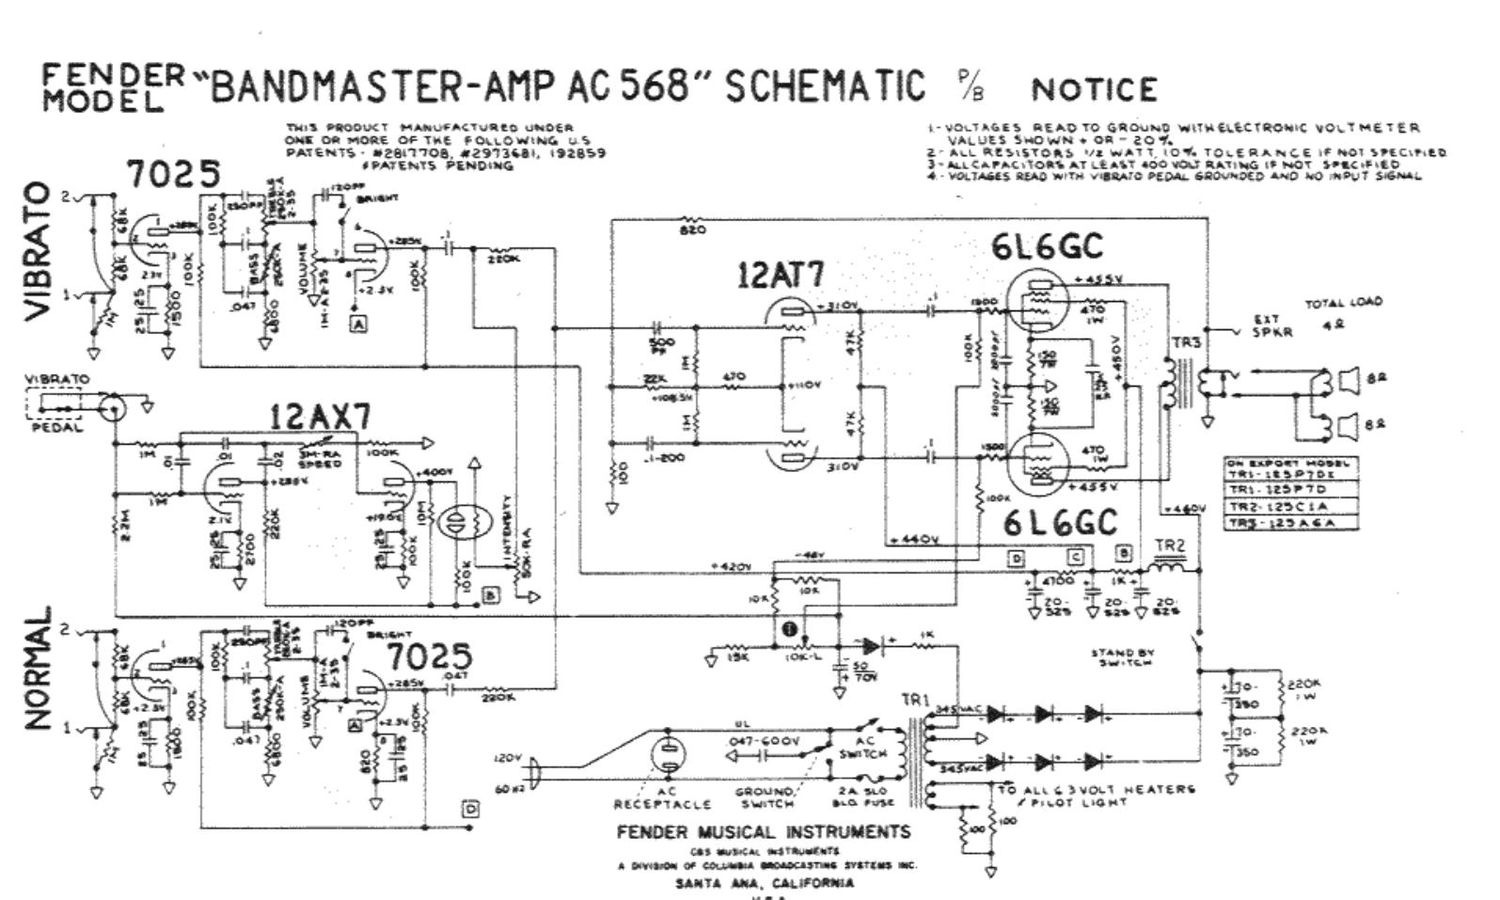 fender bandmaster ac568 schematic